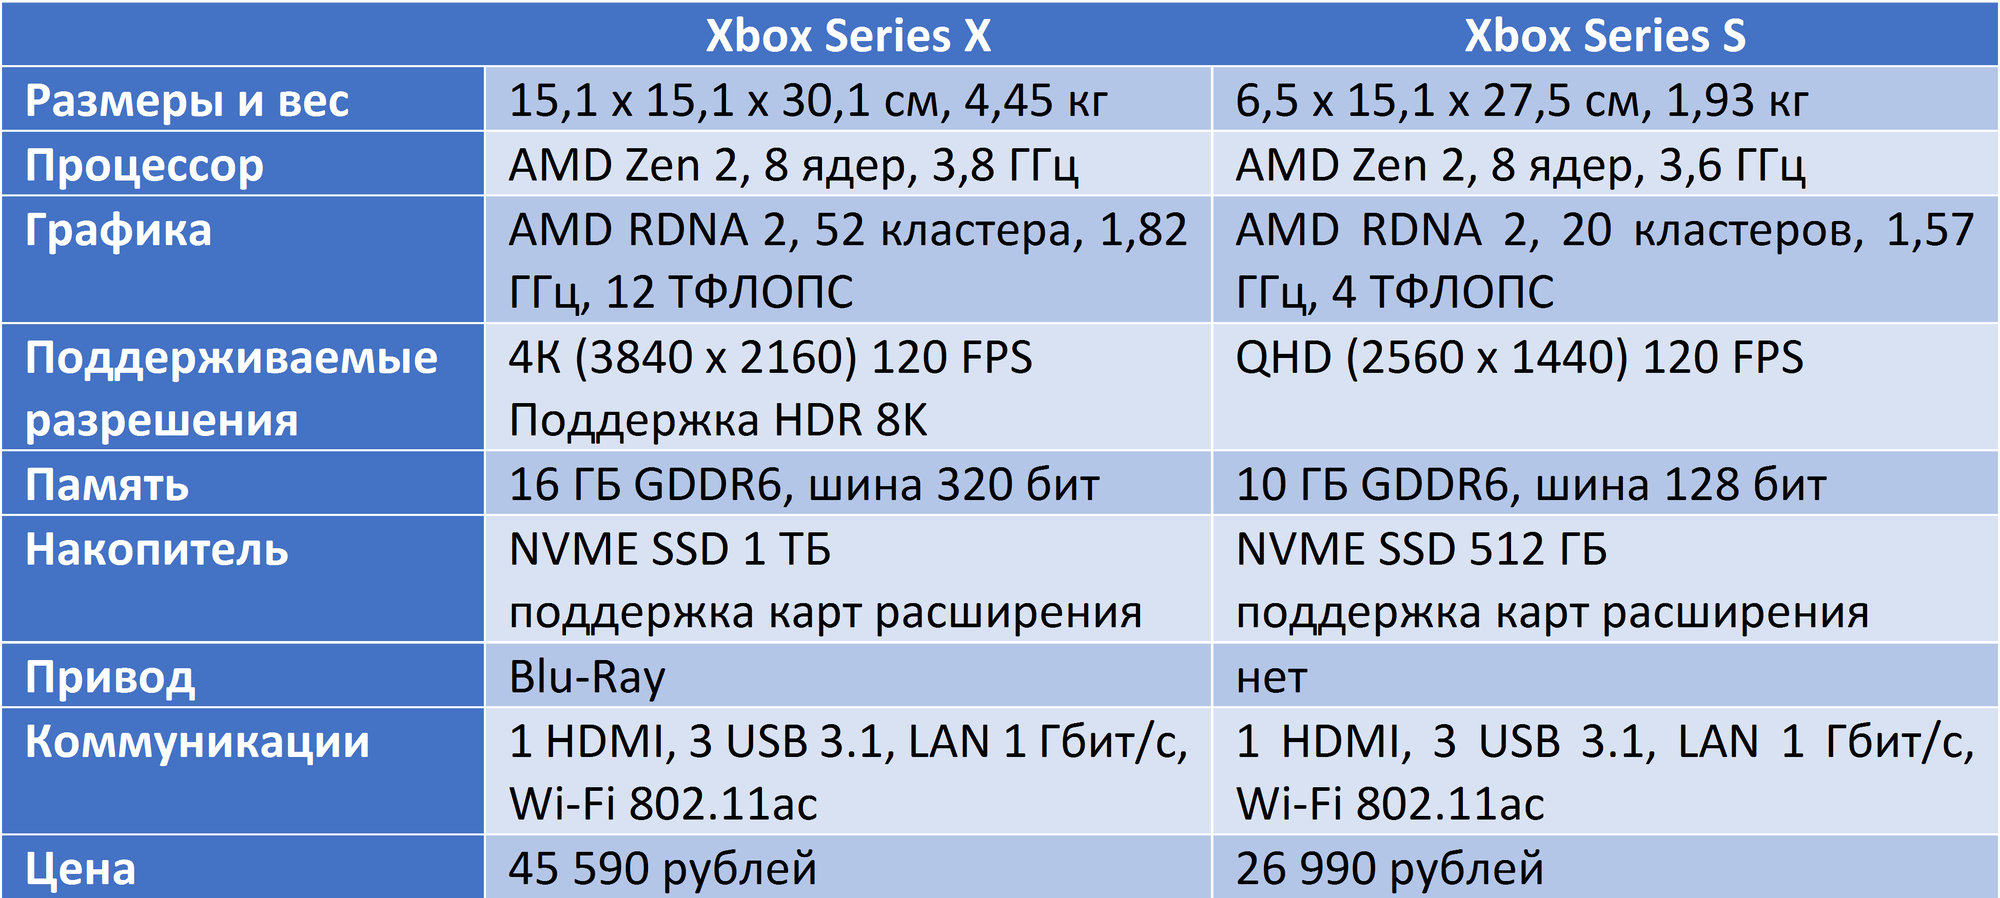 Series s отличие series x. Xbox one x характеристики железа. Xbox Series 1s характеристики. Сравнение характеристик Xbox. Характеристики консолей Xbox.